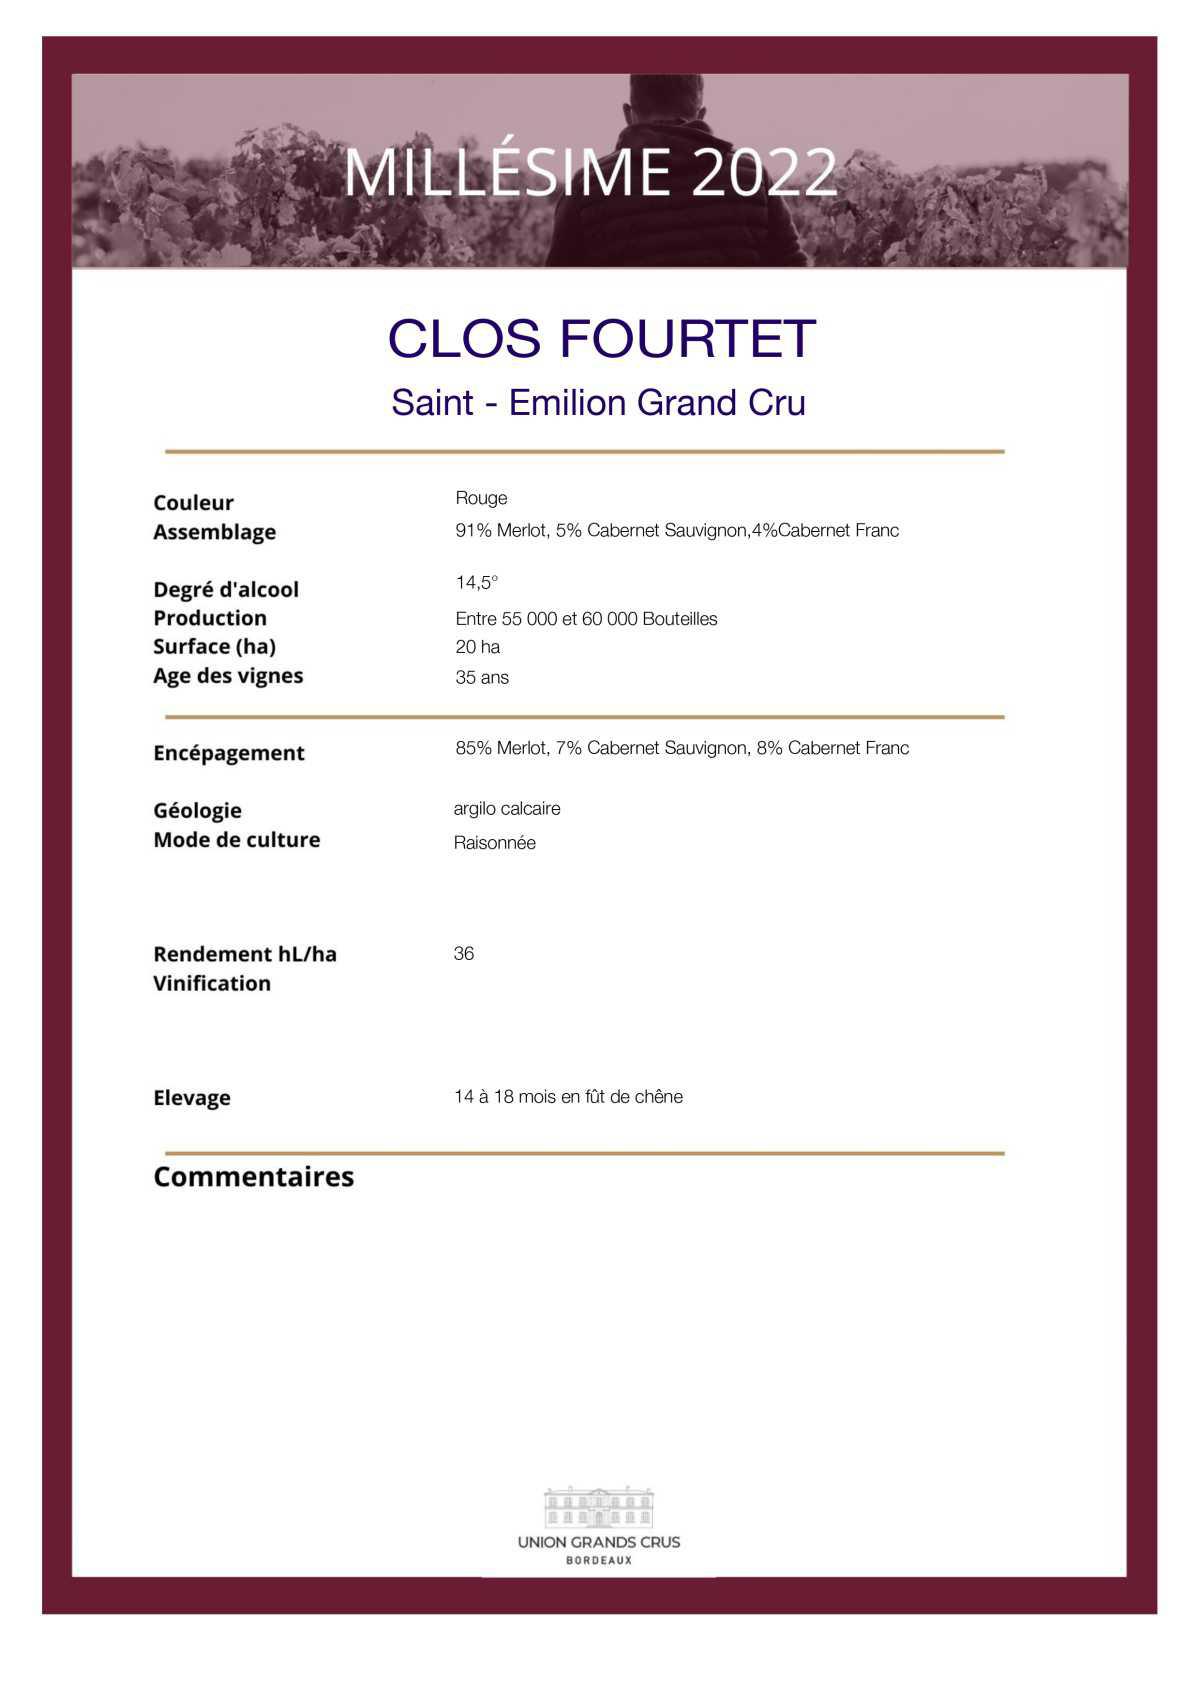  Clos Fourtet